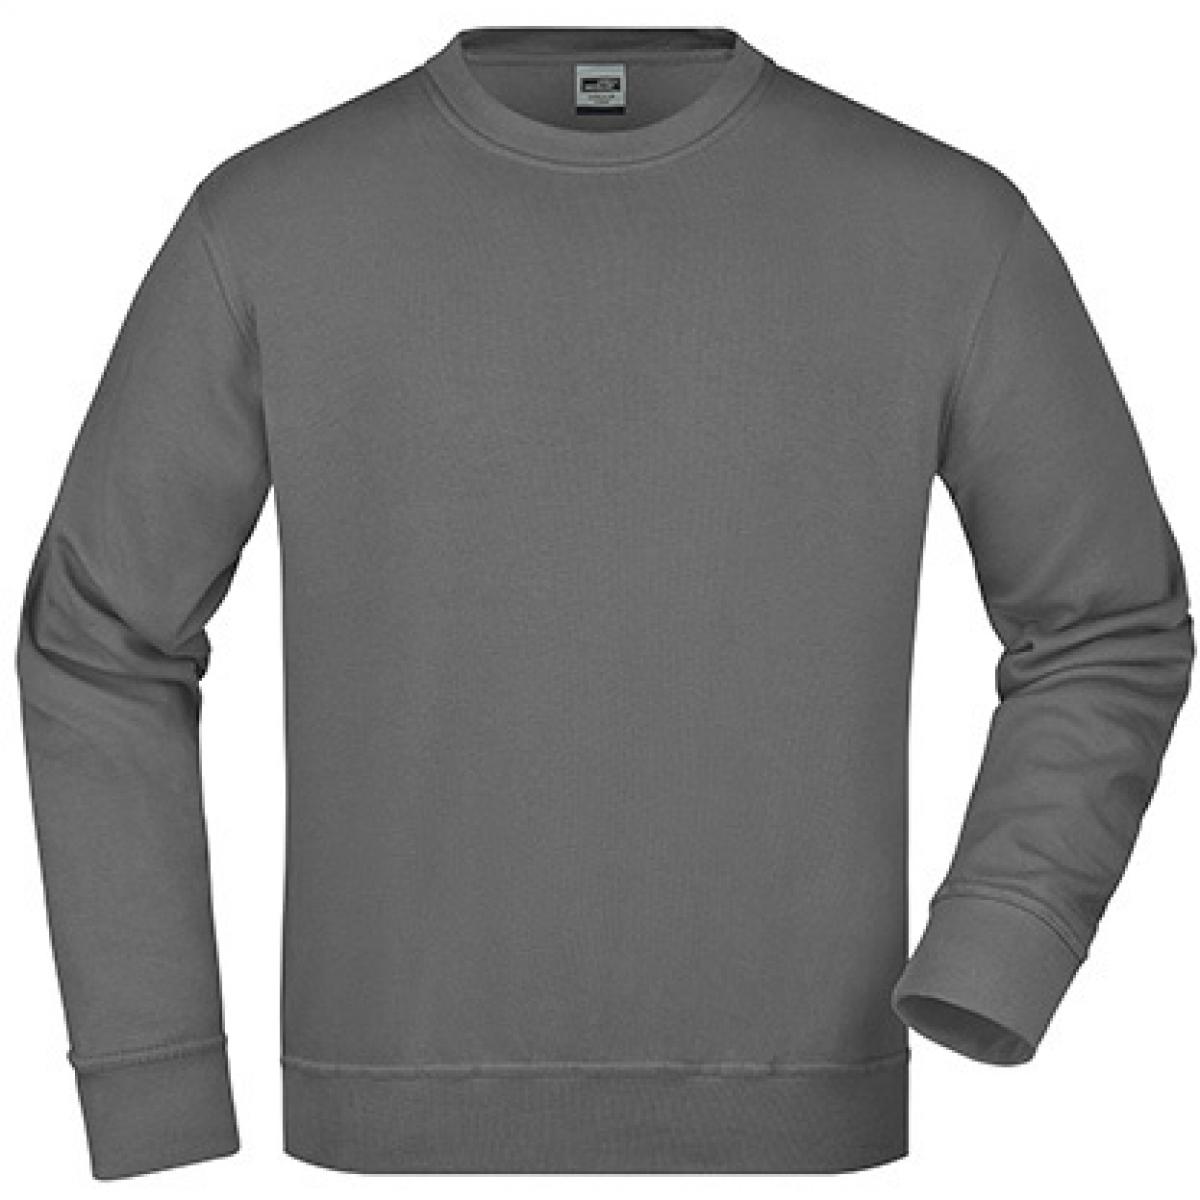 Hersteller: James+Nicholson Herstellernummer: JN840 Artikelbezeichnung: Workwear Sweatshirt / Waschbar bis 60C Farbe: Carbon